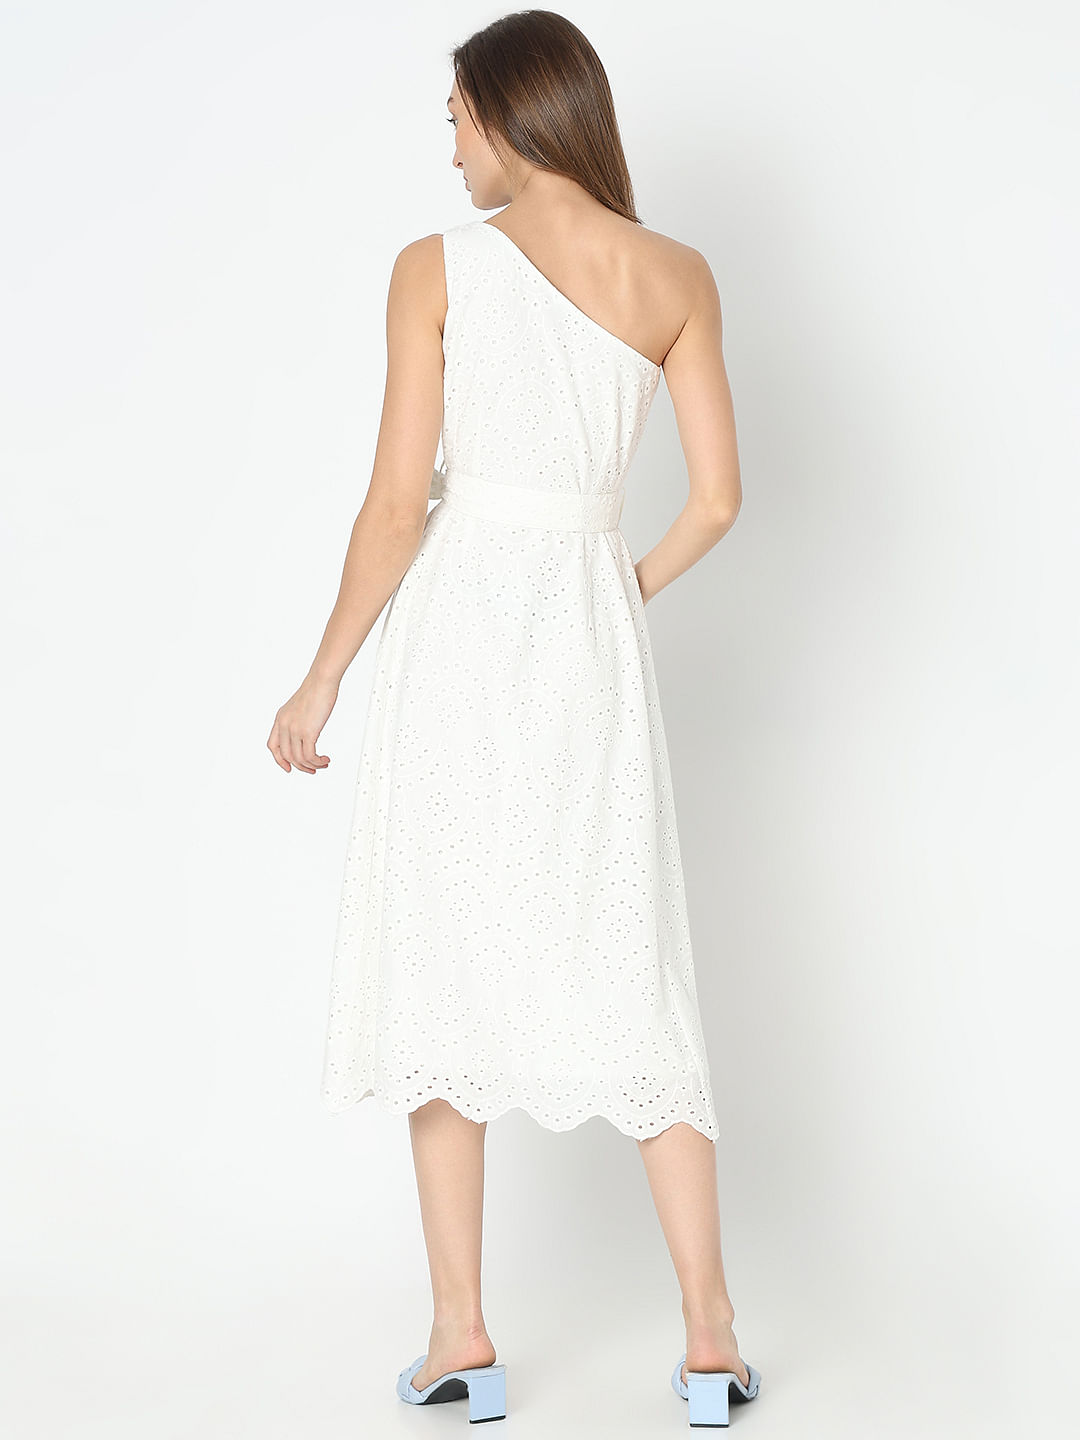 White Schiffli One-Shoulder Dress